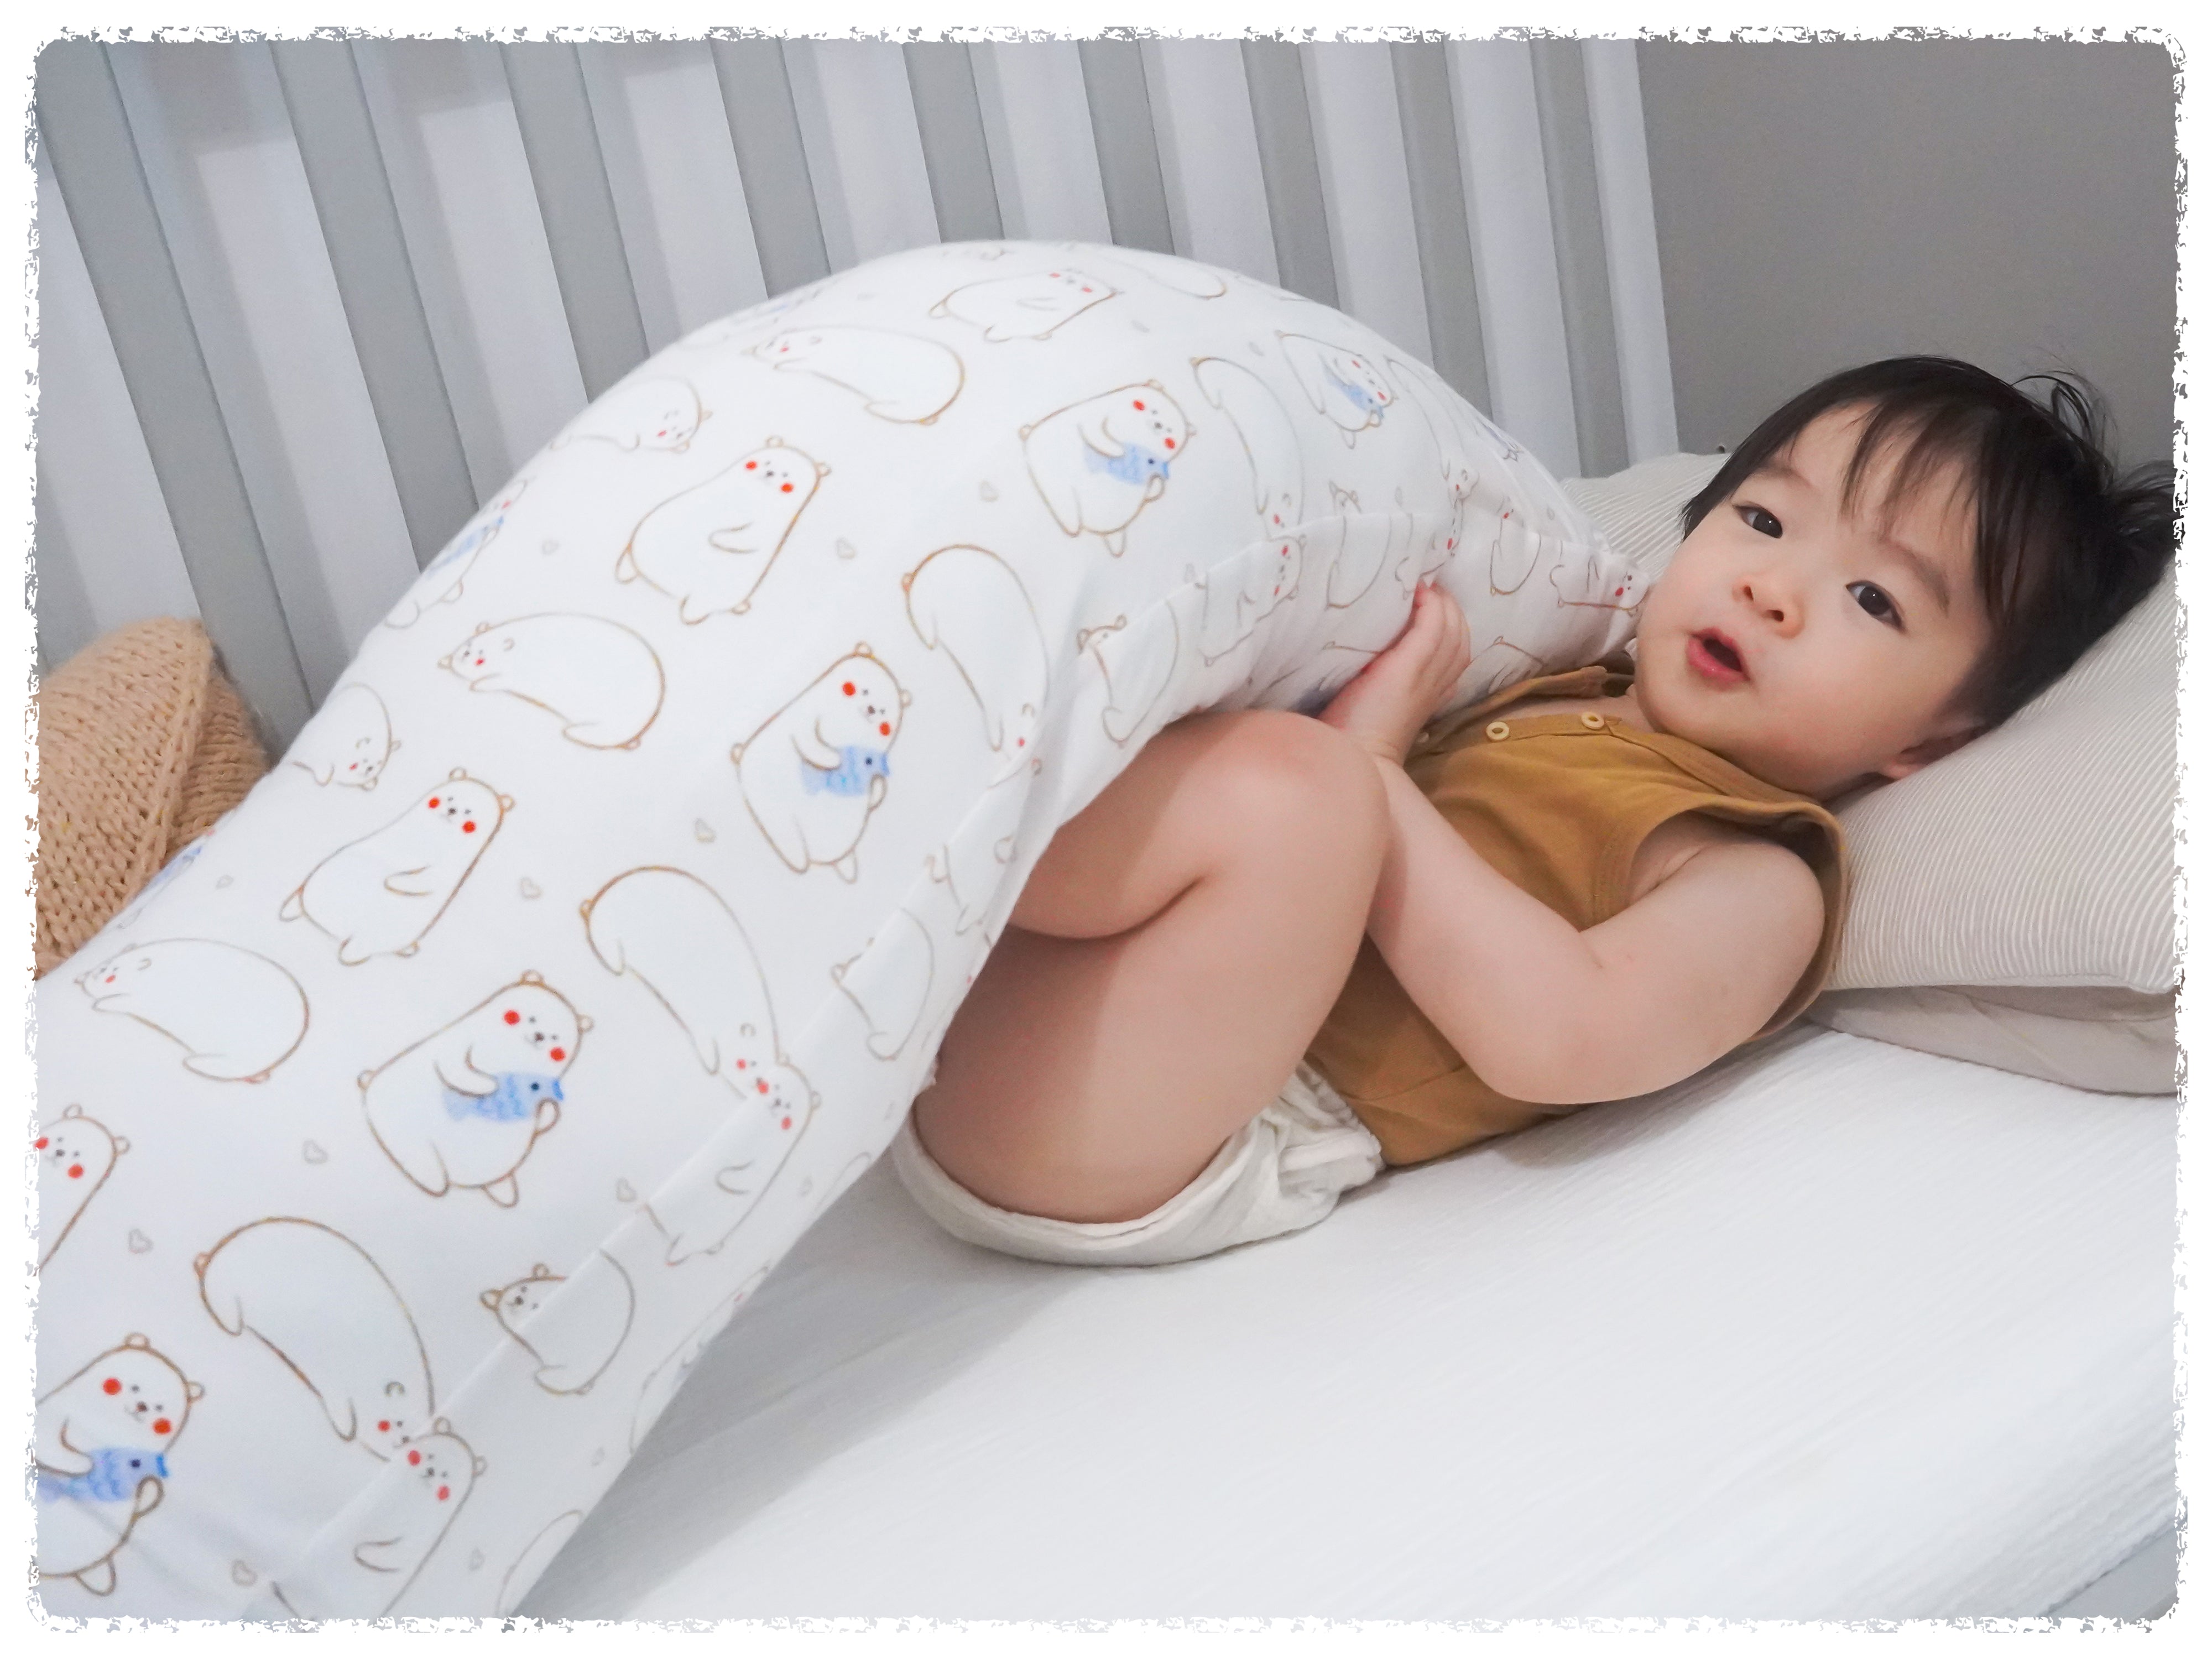 baby boy lying in crib with cho xl maru bear pillow